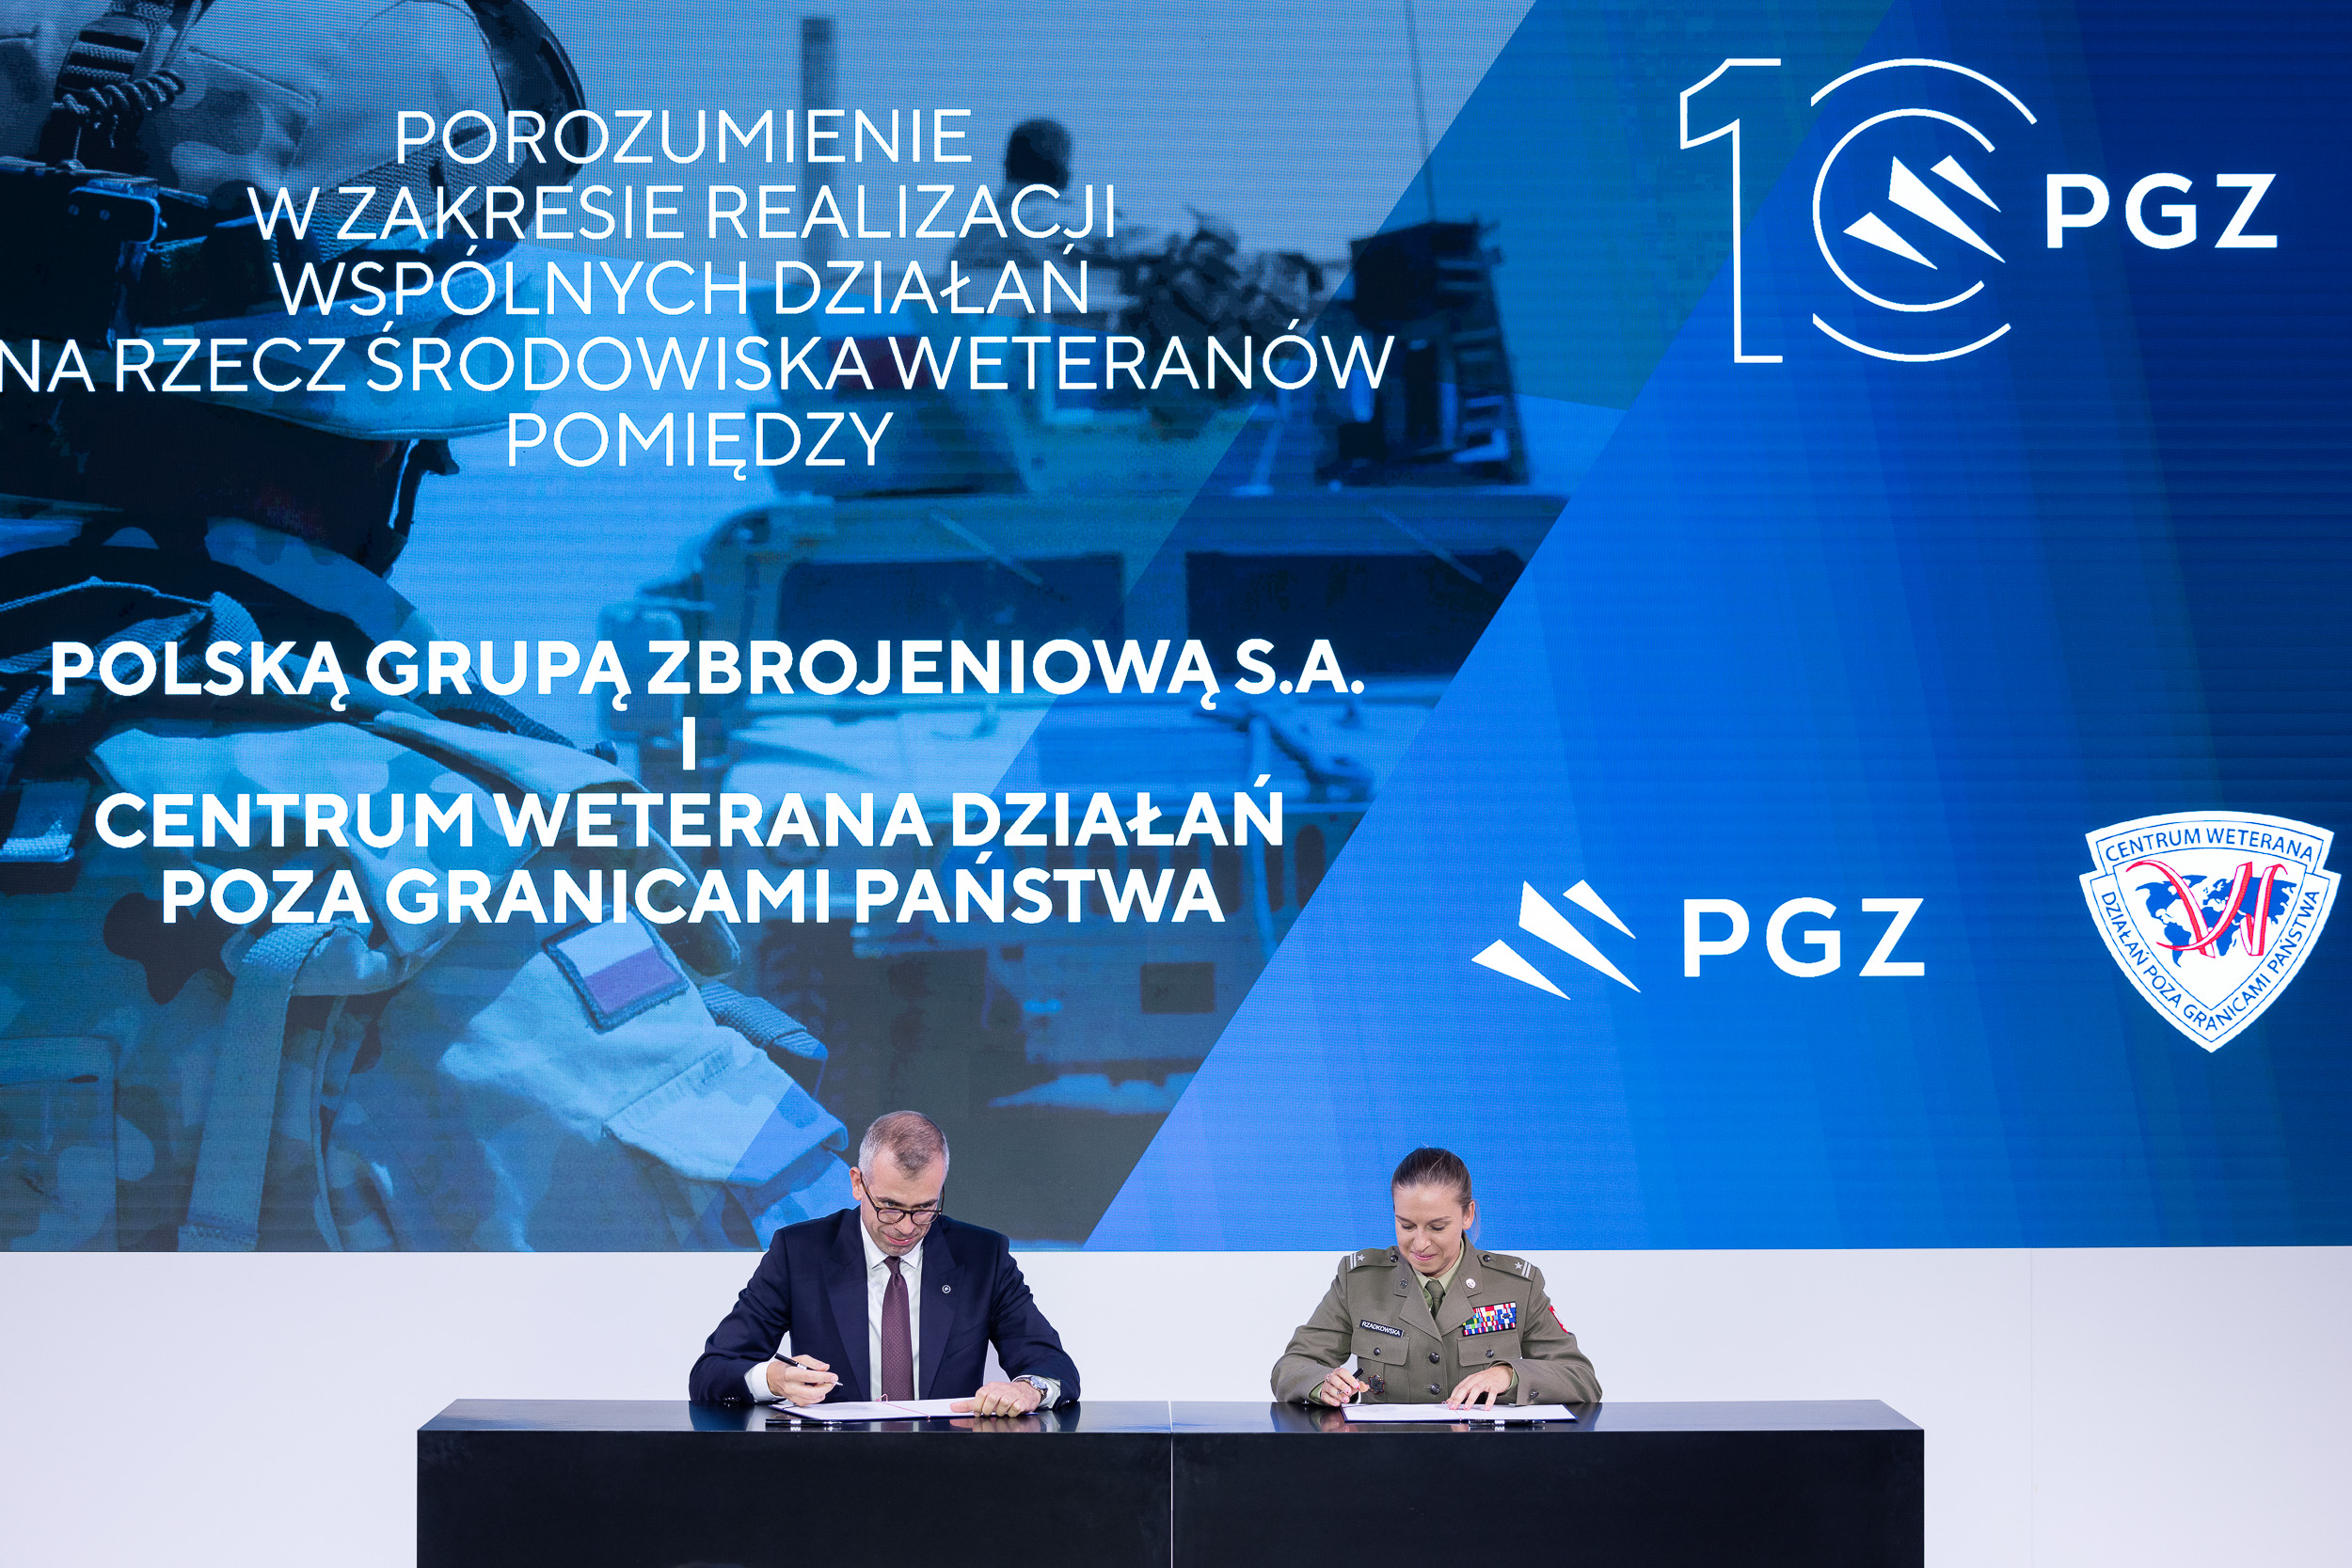 Polska Grupa Zbrojeniowa S.A. i Centrum Weterana Działań poza Granicami Państwa zawiązują sojusz na rzecz weteranów